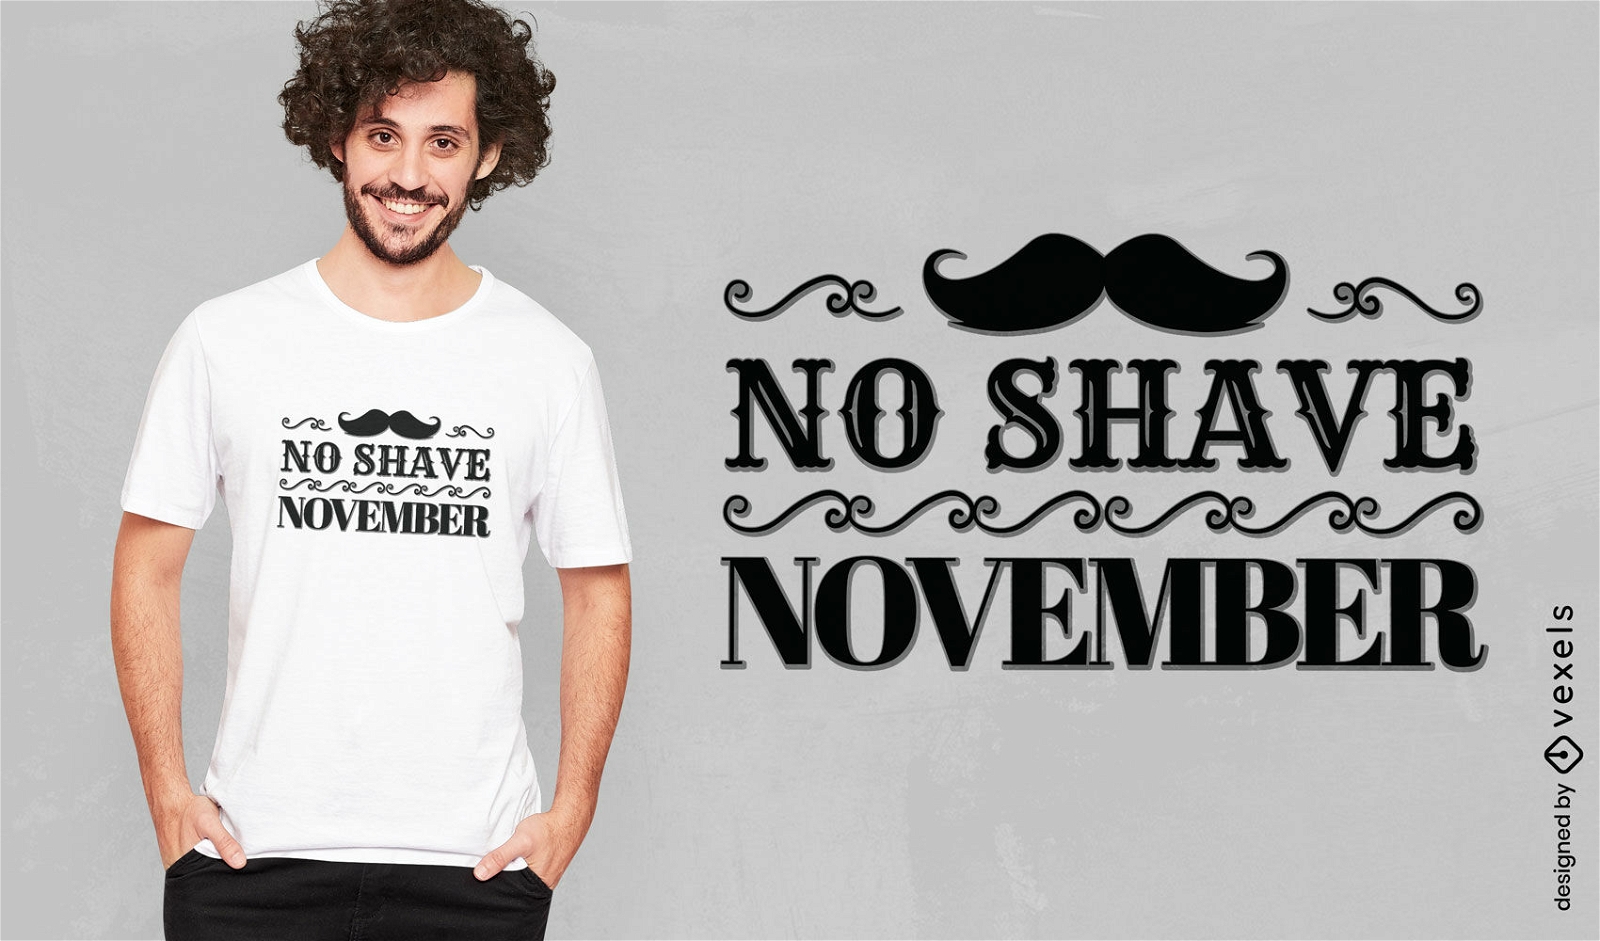 No shave November mustache t-shirt design